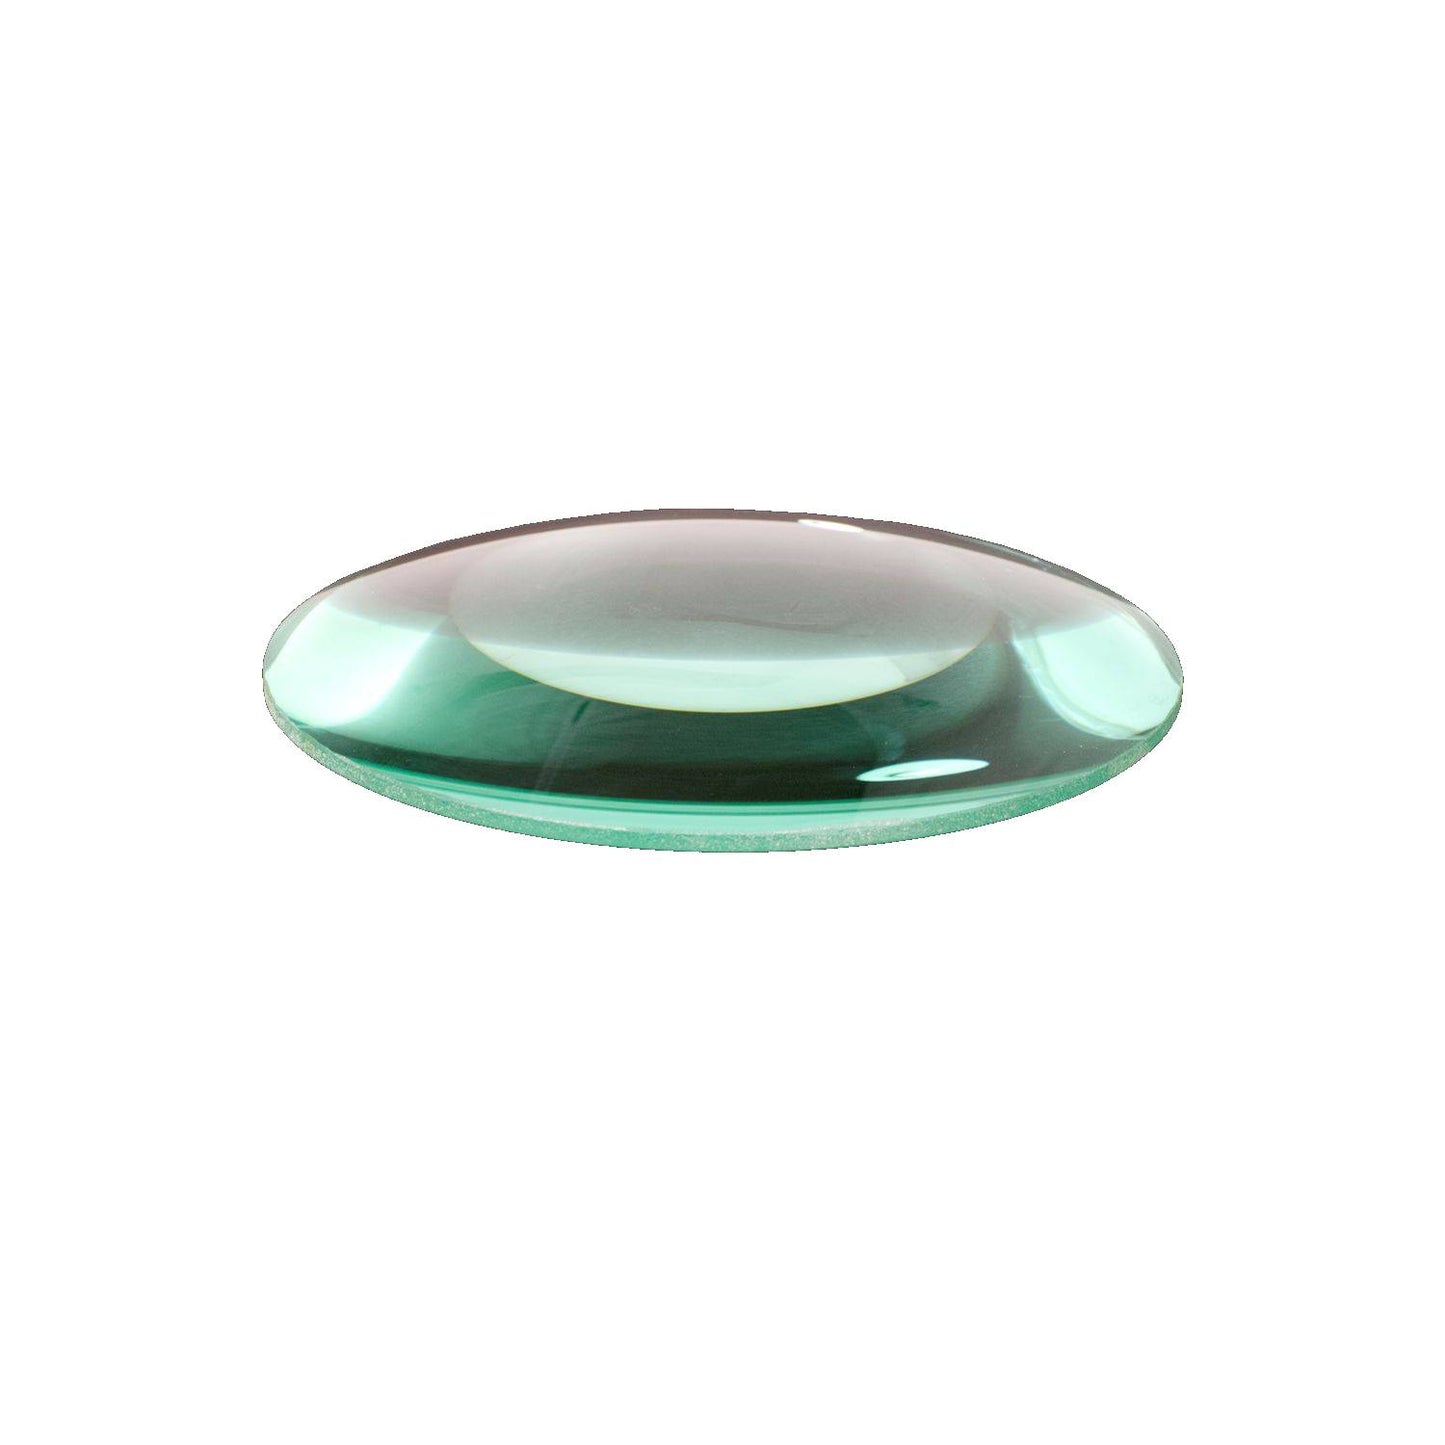 Lumeno Lentille en verre clair ou standard en 3, 5 ou 8 dioptries avec 125 mm